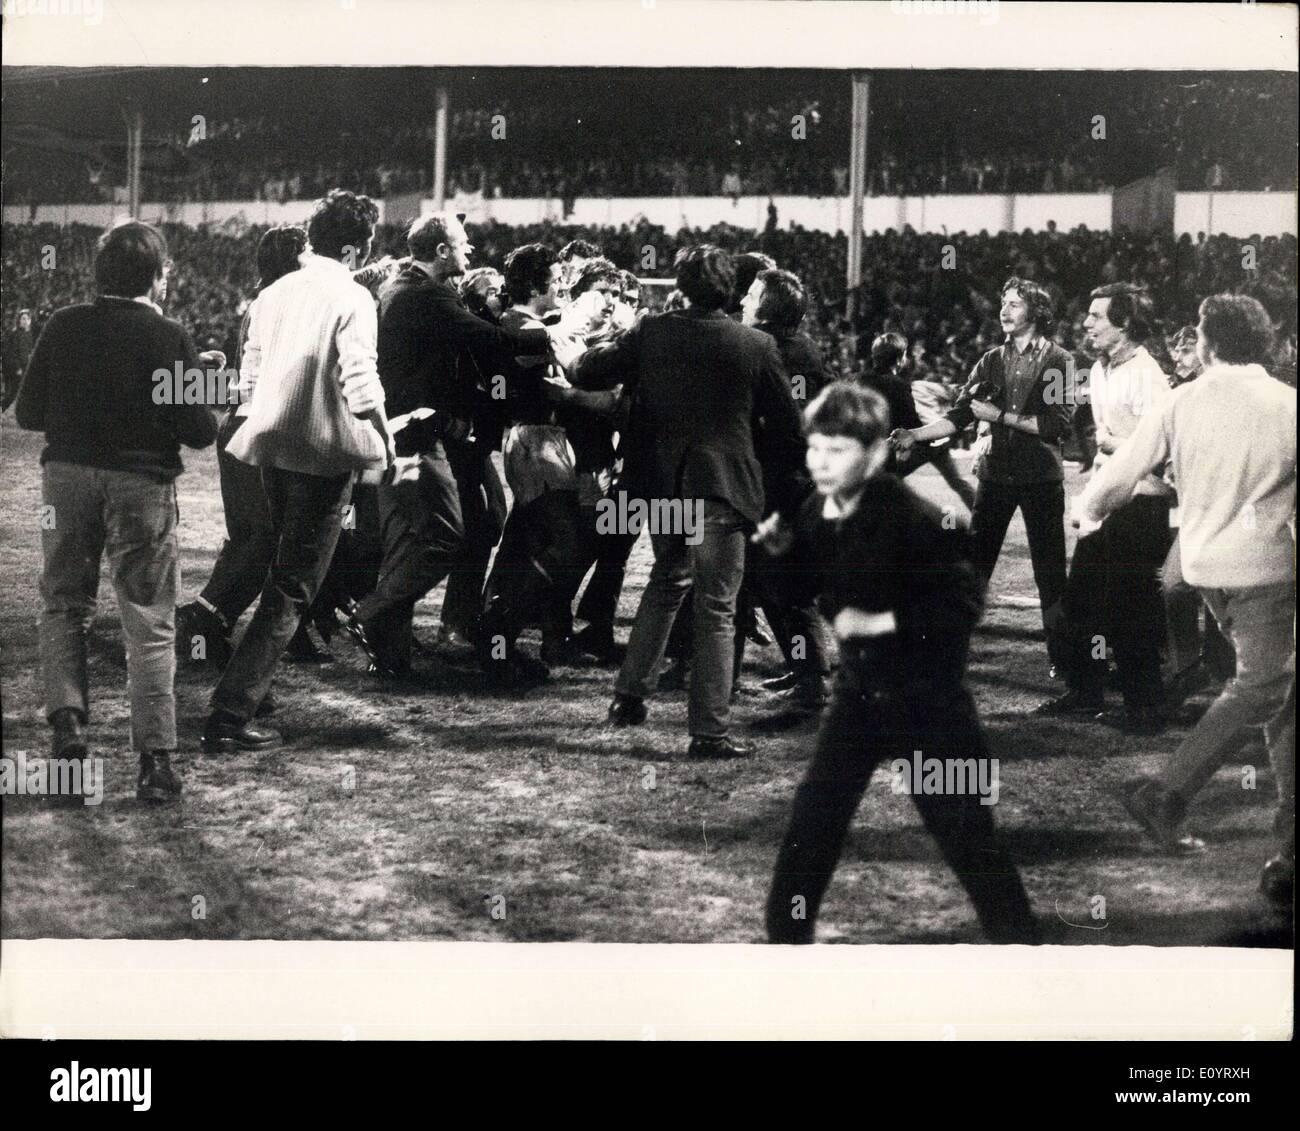 Le 04 mai 1971 - Arsenal gagner le championnat de la Ligue - Arsenal la nuit dernière a remporté le championnat de la Ligue lorsqu'ils ont battu 1-0 par Tottenham Hotspur à WHite Hasrt Lane, en dernier. Le but gagnant est venu dans les dernières minutes du jeu - marqués par Ray Kennedy. Photo : Keystone montre- Joueurs Arsenal Frank McLintock et Eddie Kelly sont entourés par la fane, après le match de la nuit dernière à Hasrt blanc Lane. Banque D'Images